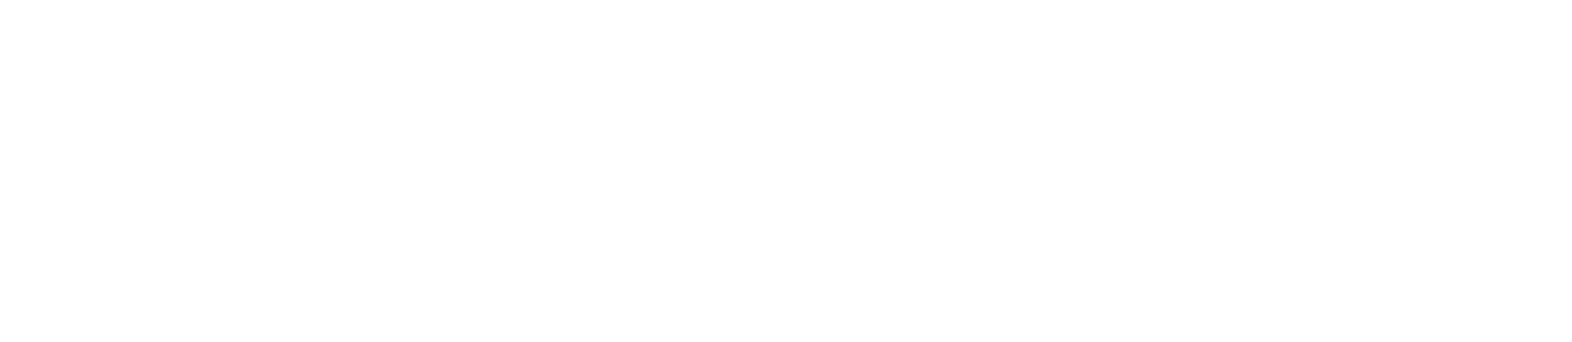 Nanobiotix Logo groß für dunkle Hintergründe (transparentes PNG)